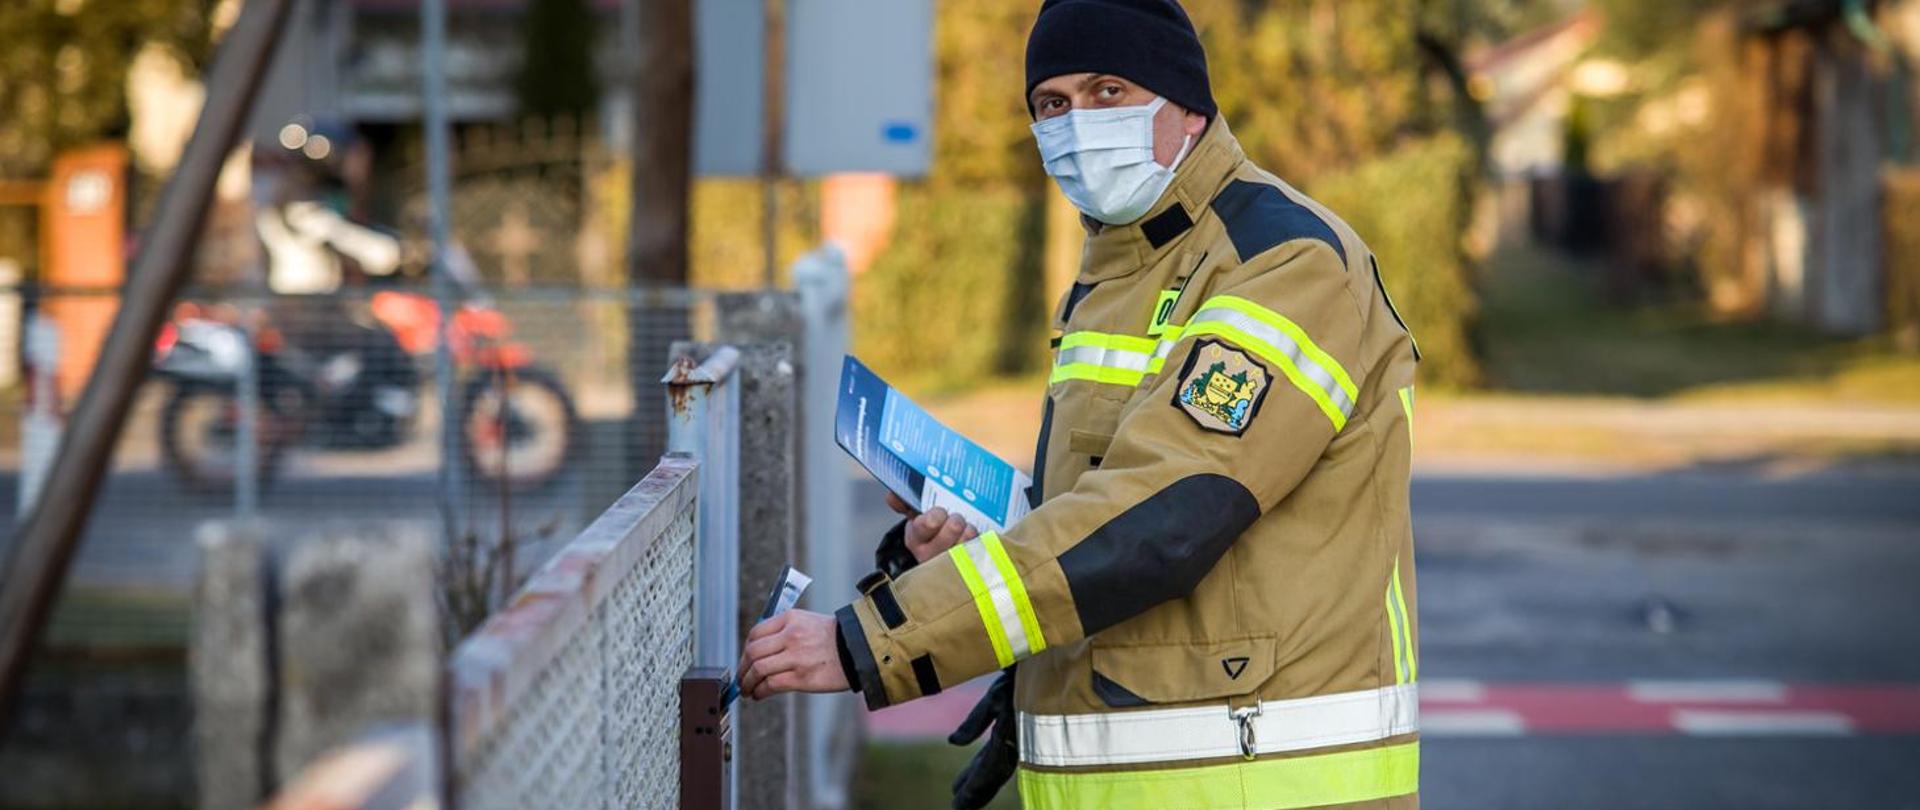 Zdjęcie przedstawia strażaka OSP wrzucającego ulotkę propagujące wiedzę na temat profilaktyki oraz szczepień przeciwko COVID-19. Strażak wrzuca ulotkę lewą ręką do skrzynki na listy. W prawej ręce trzyma pozostałe ulotki. Strażak ubrany w ubranie specjalne koloru piaskowego, czarną czapkę i jasną maseczkę na twarzy.